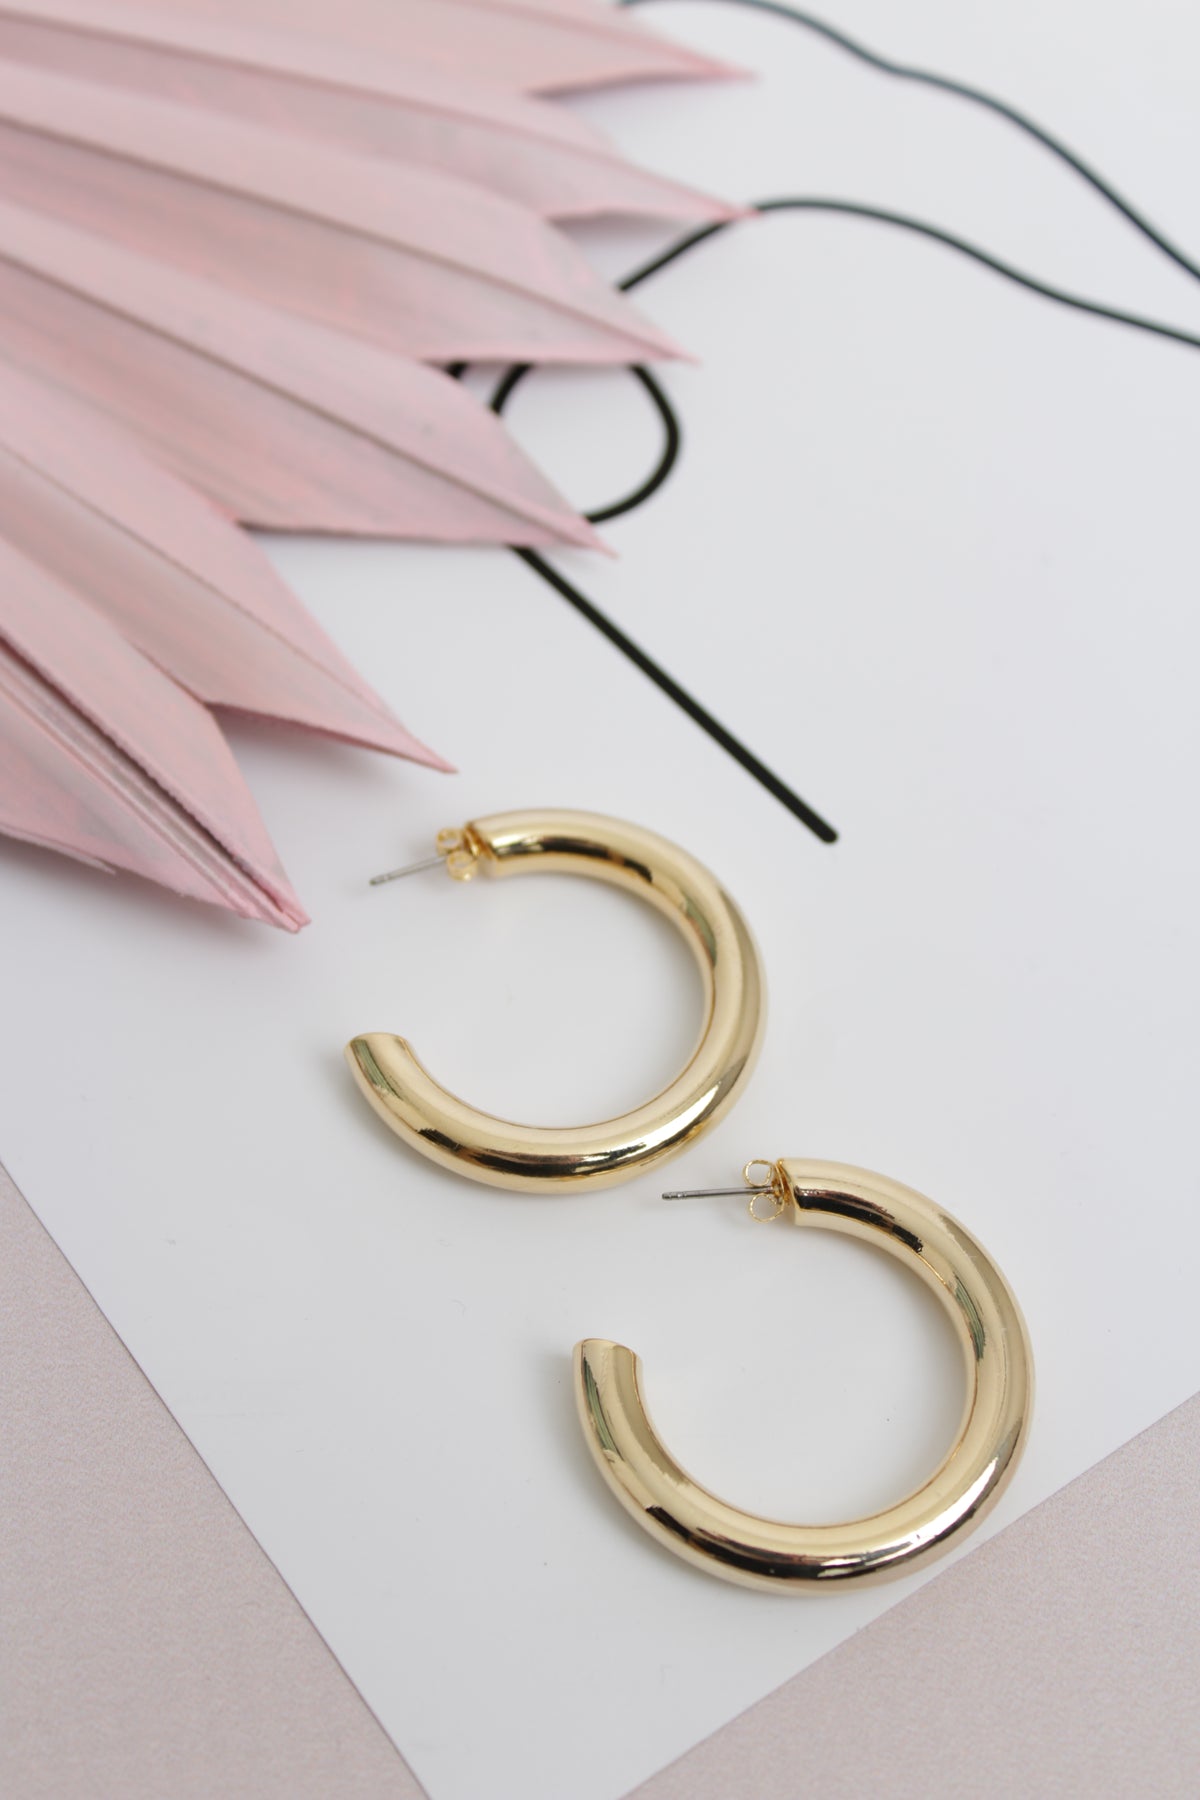 Lani Earrings Gold 1.5"